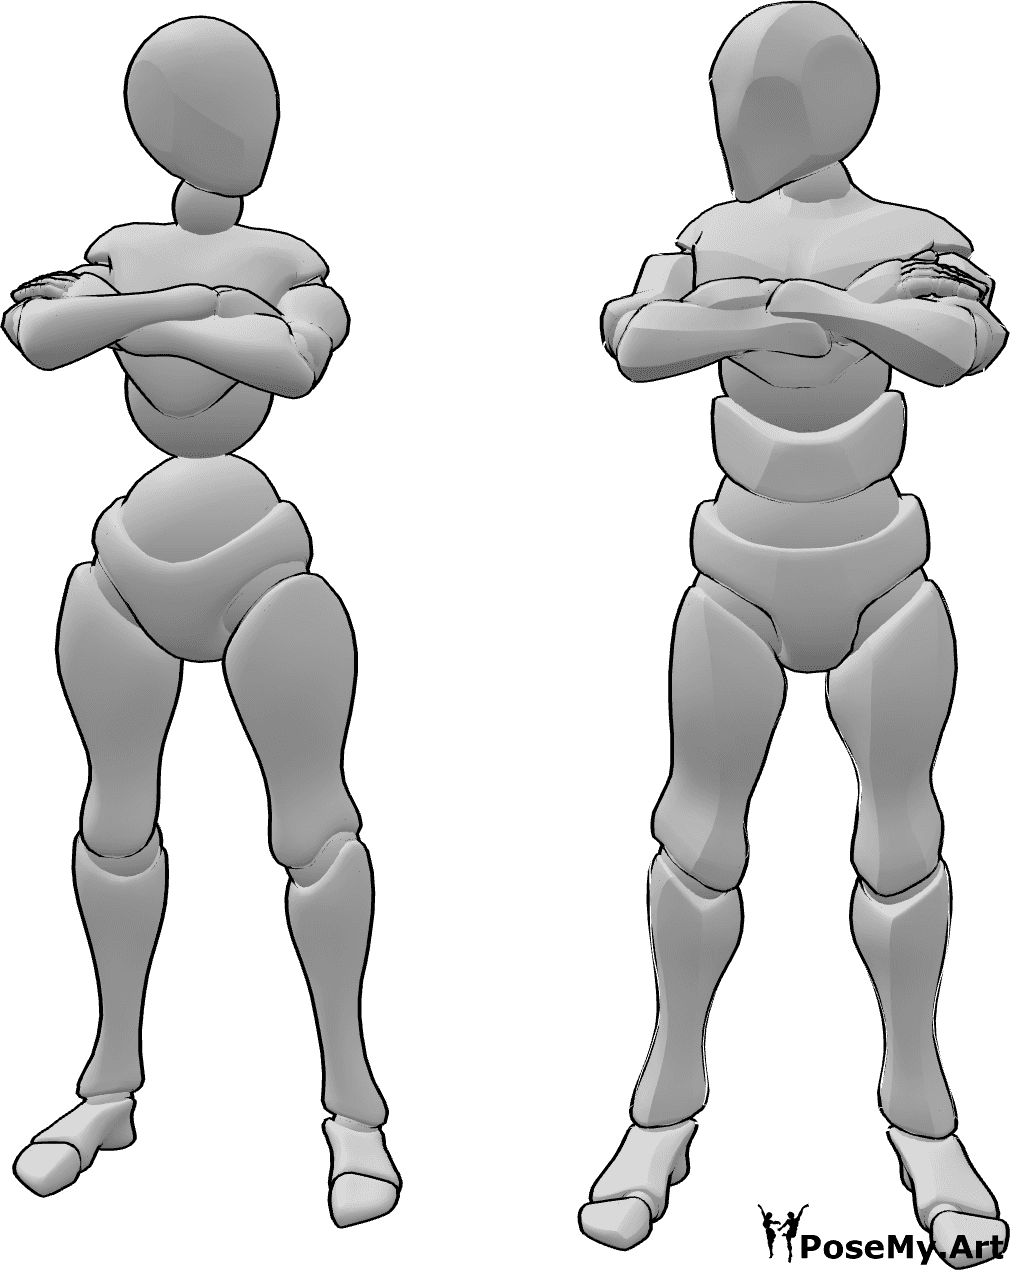 Referência de poses- Pose de braços cruzados zangados - Mulher e homem zangados com uma pose de braços cruzados